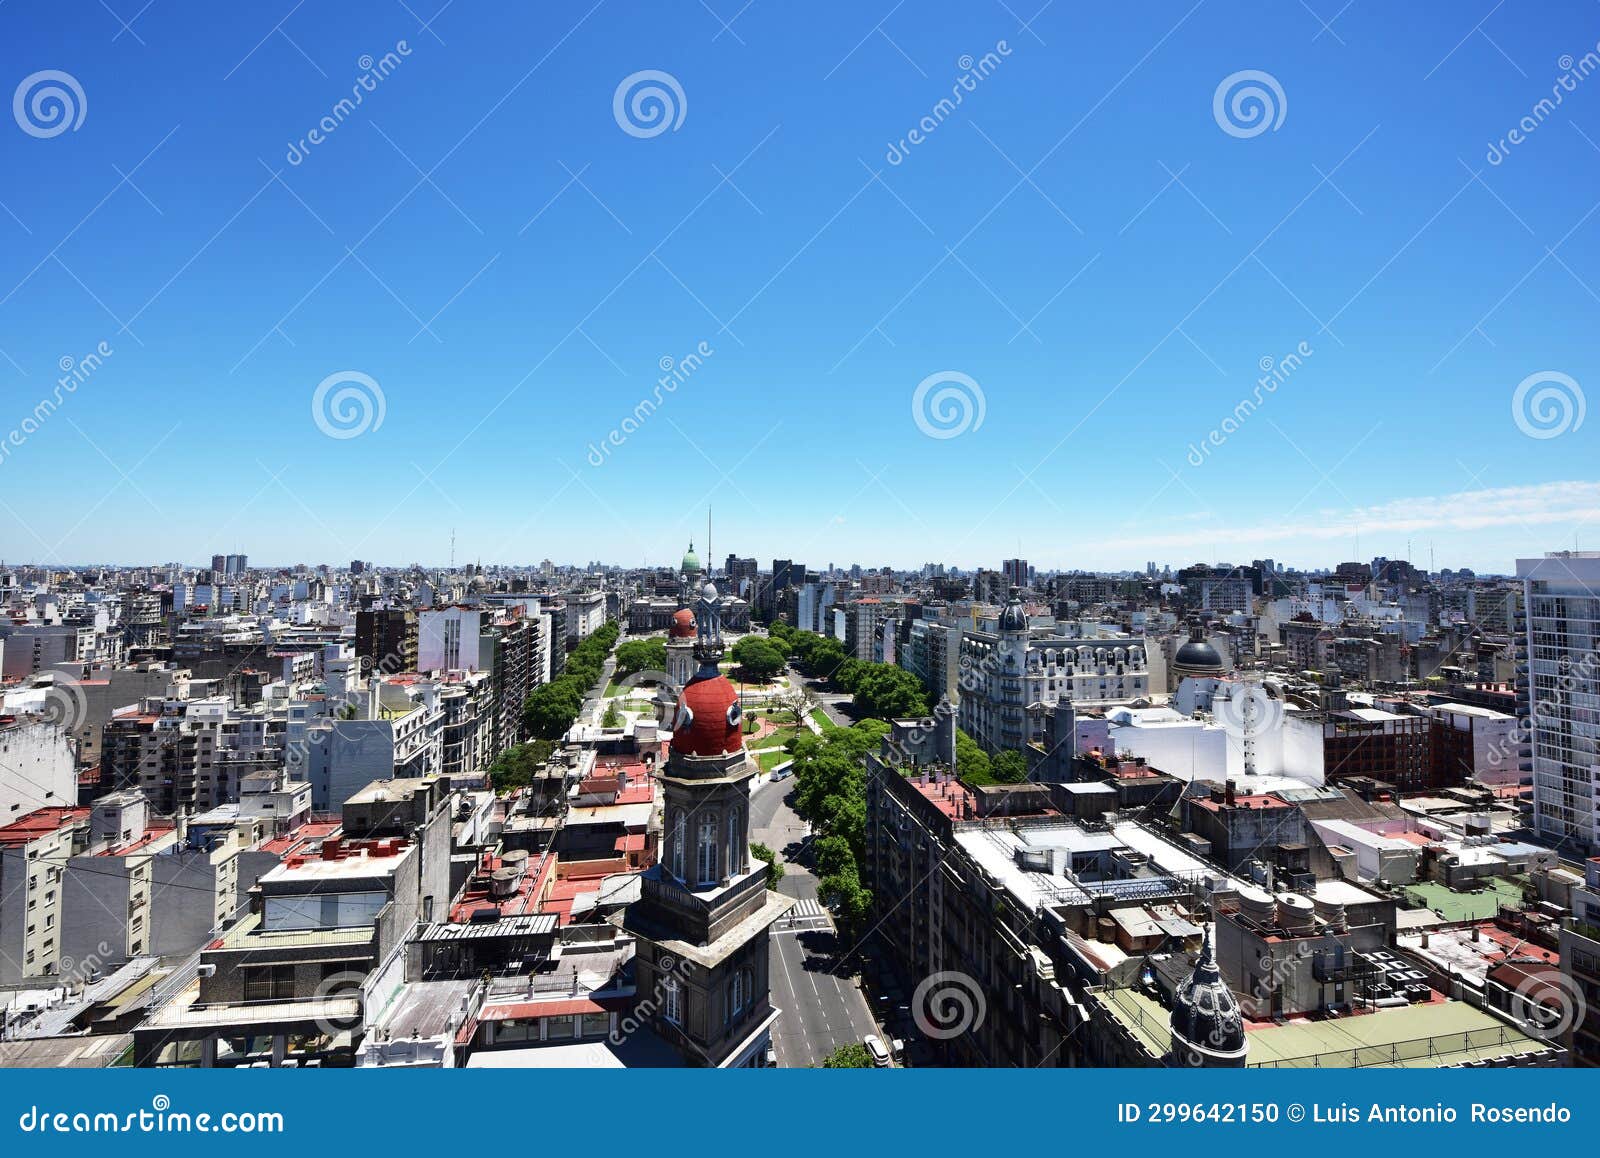 aerial view of buenos aires and plaza y congreso de la nacion with old domes in buenos aires, argentina